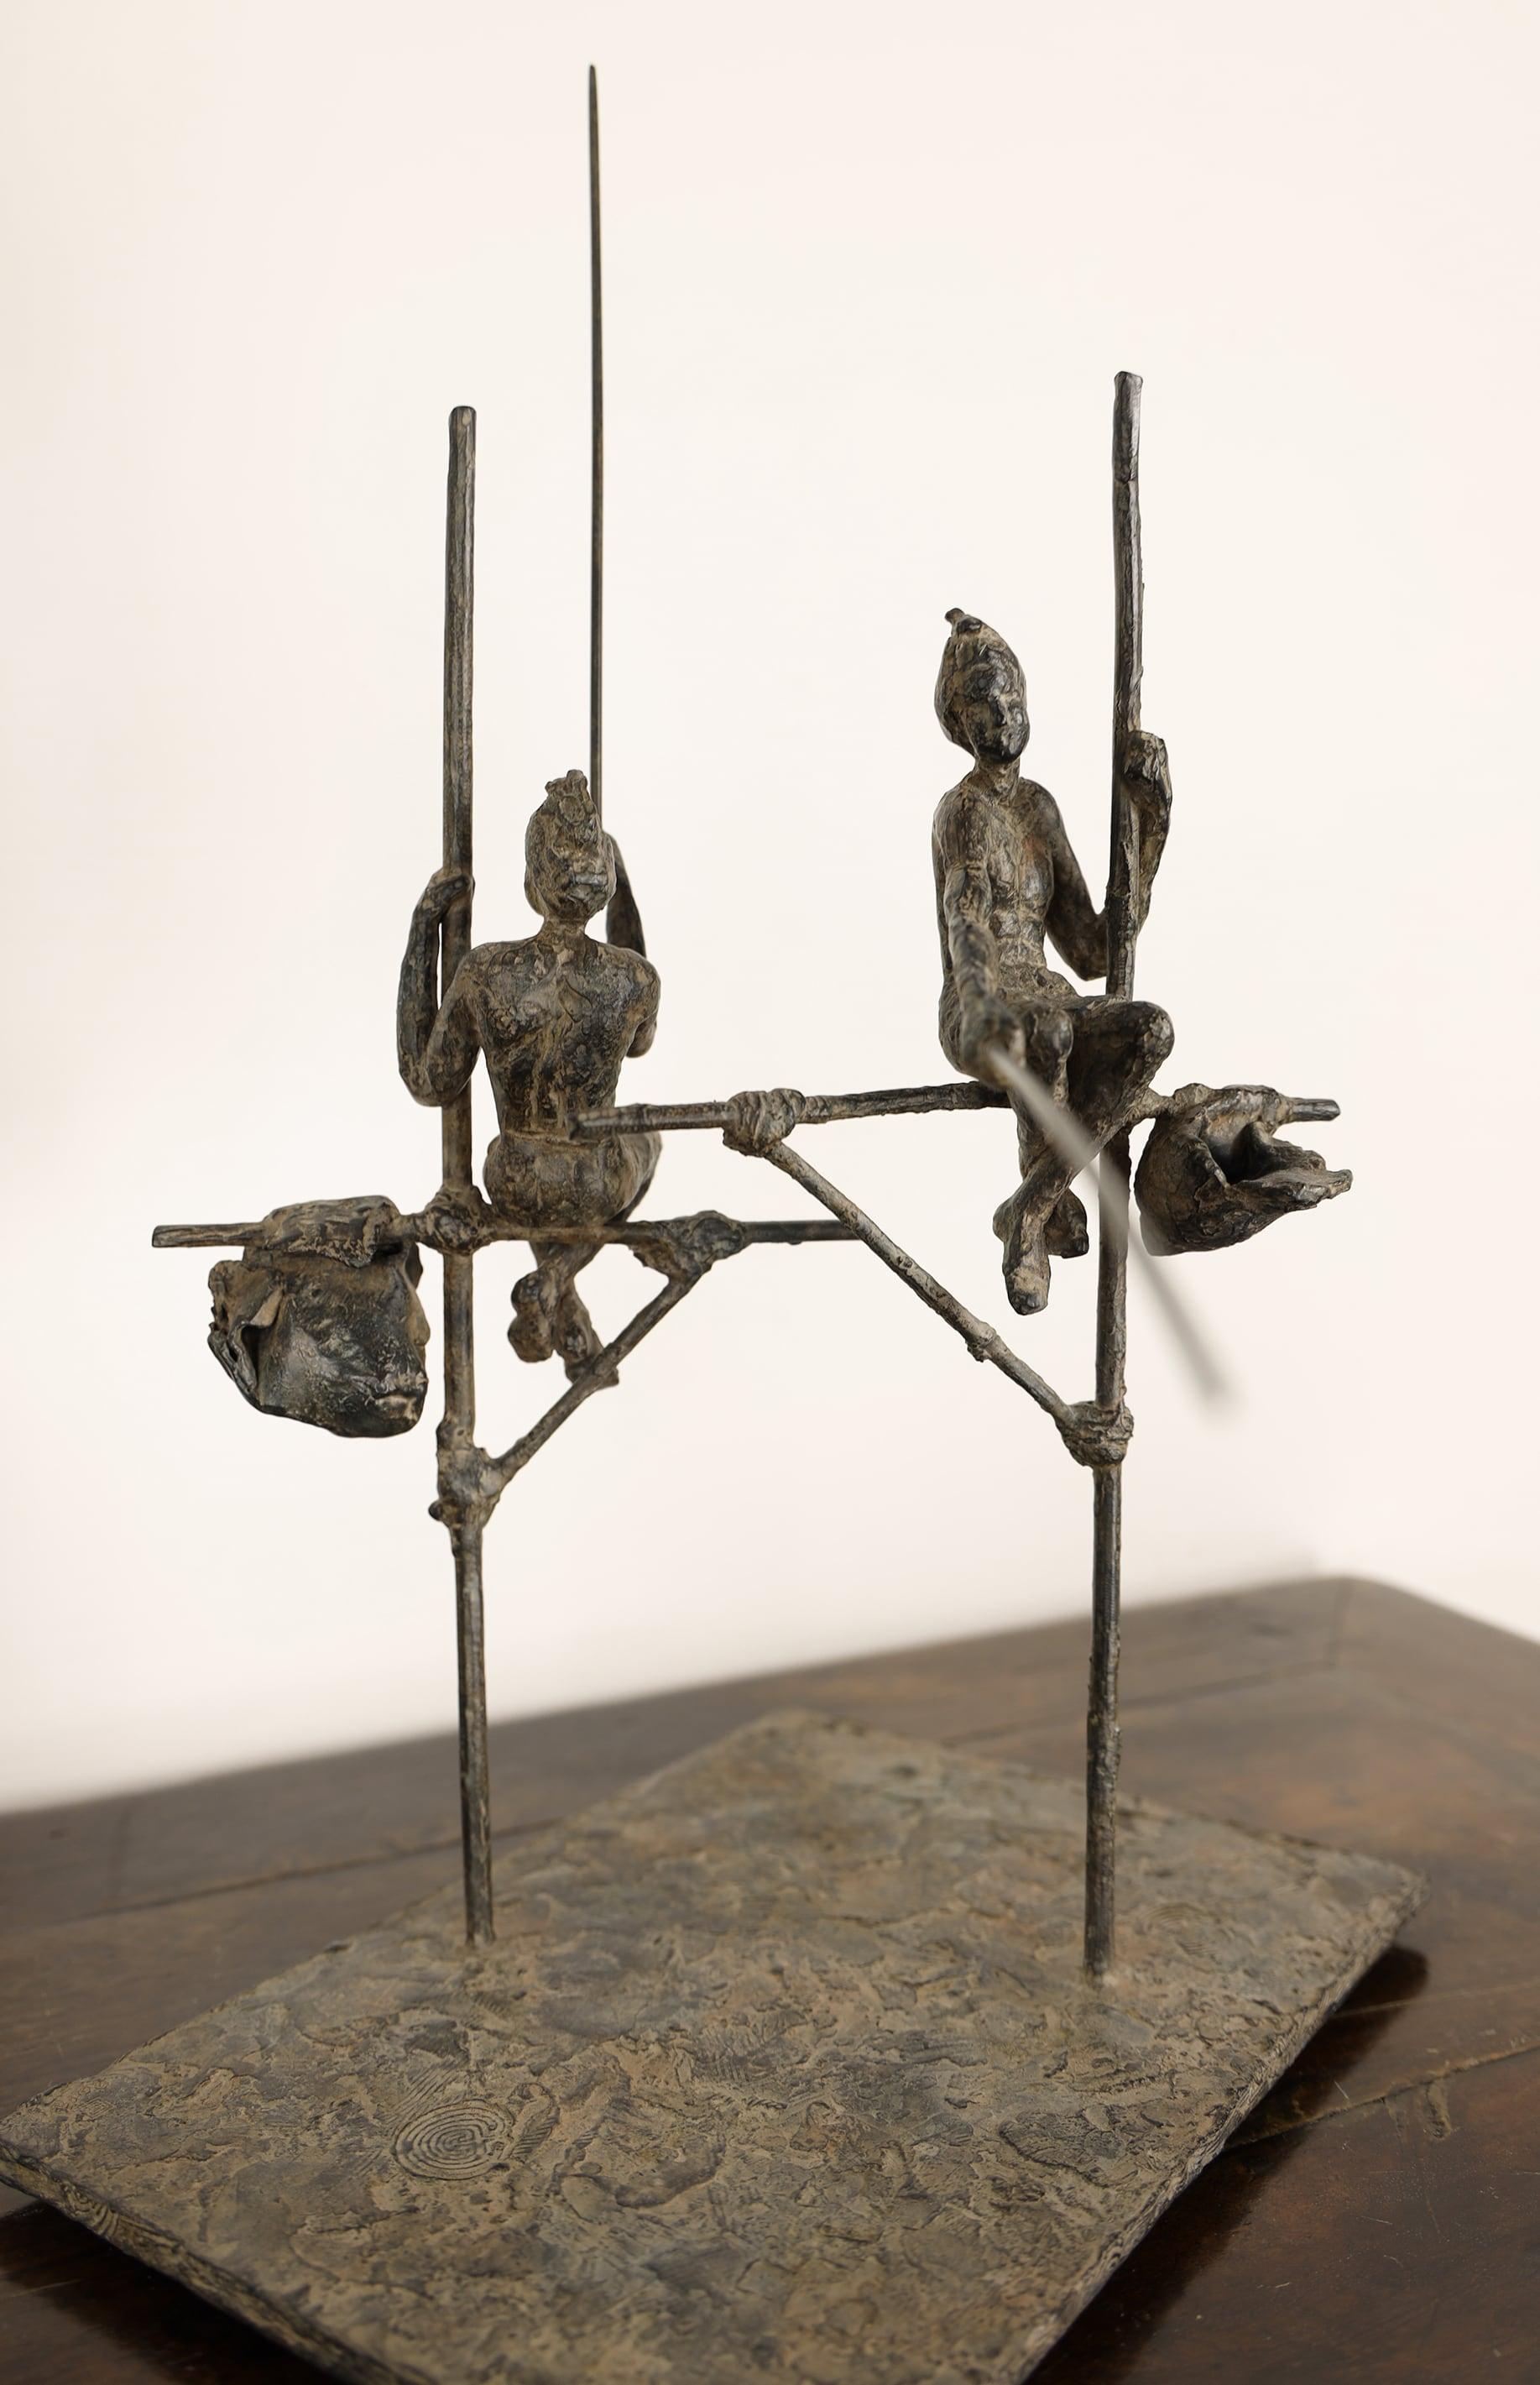 Figurative Sculpture Marine de Soos - Groupe de deux pêcheurs sur échasses par M. I. One - Sculpture contemporaine en bronze